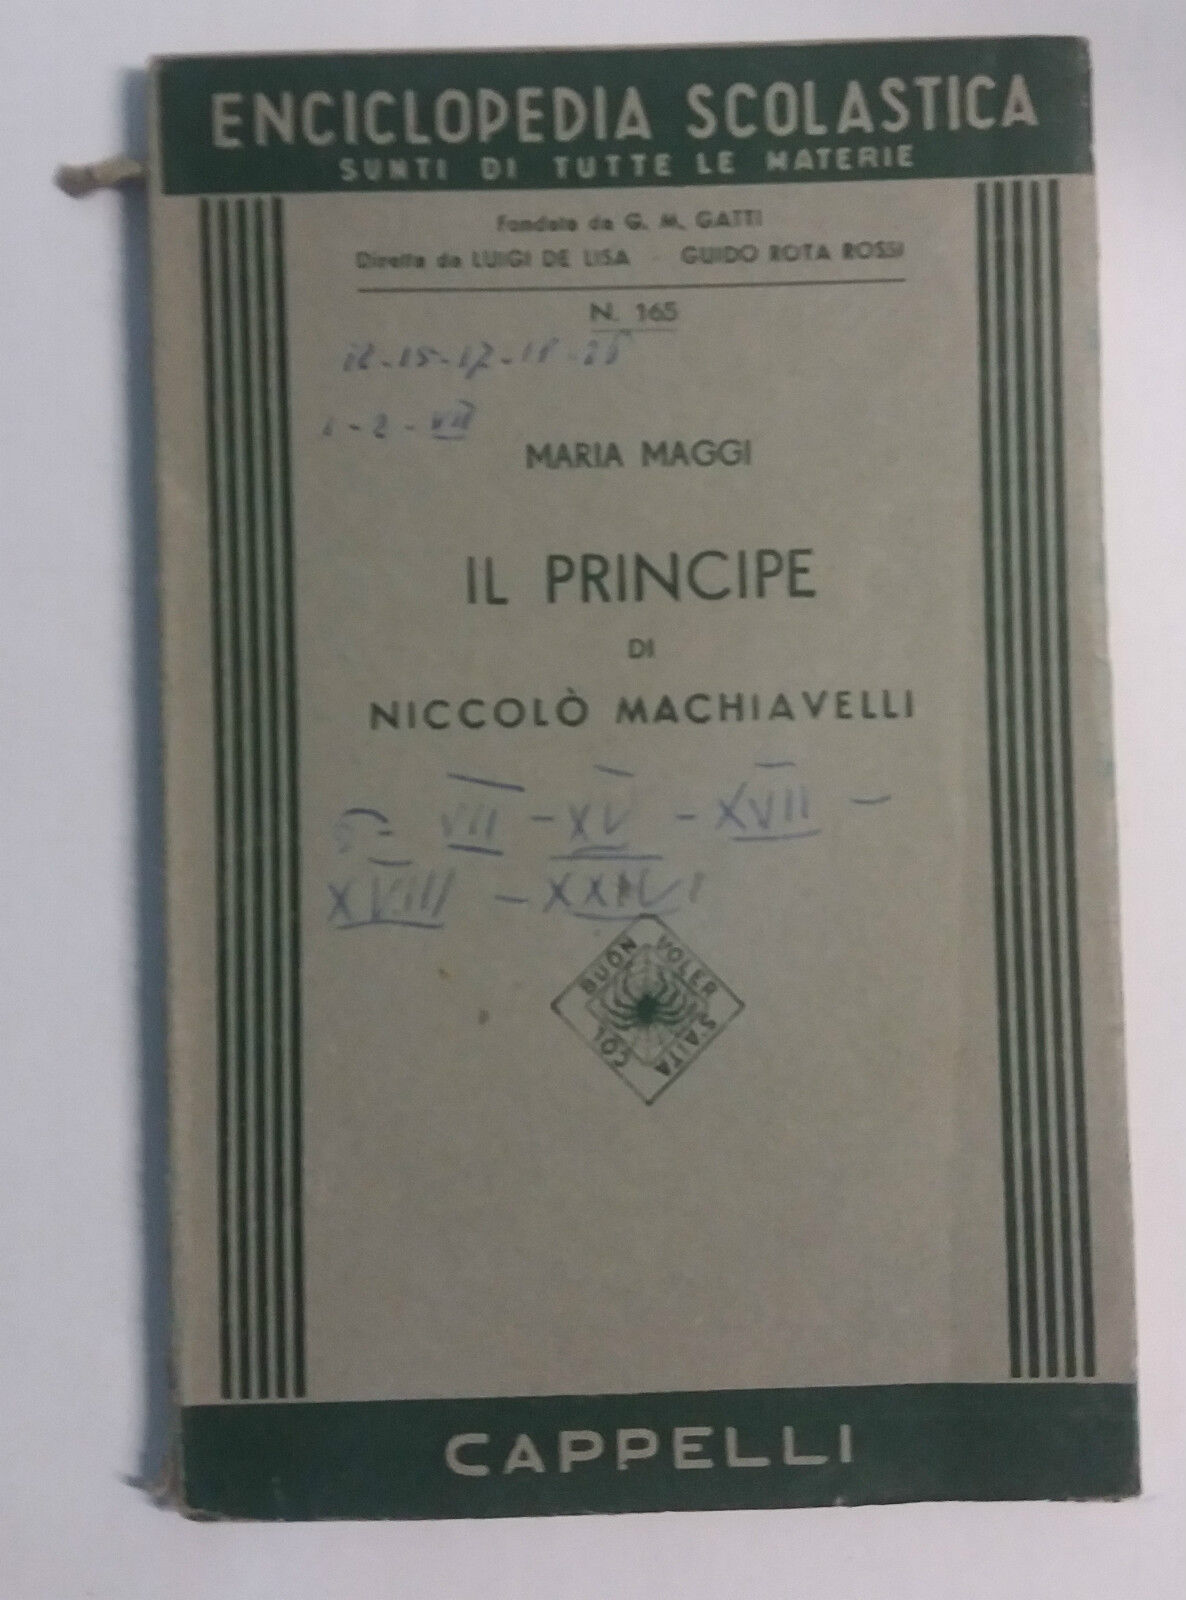 Il Principe di Niccol? Machiavelli - Maria Maggi - Cappelli - 1955 - G